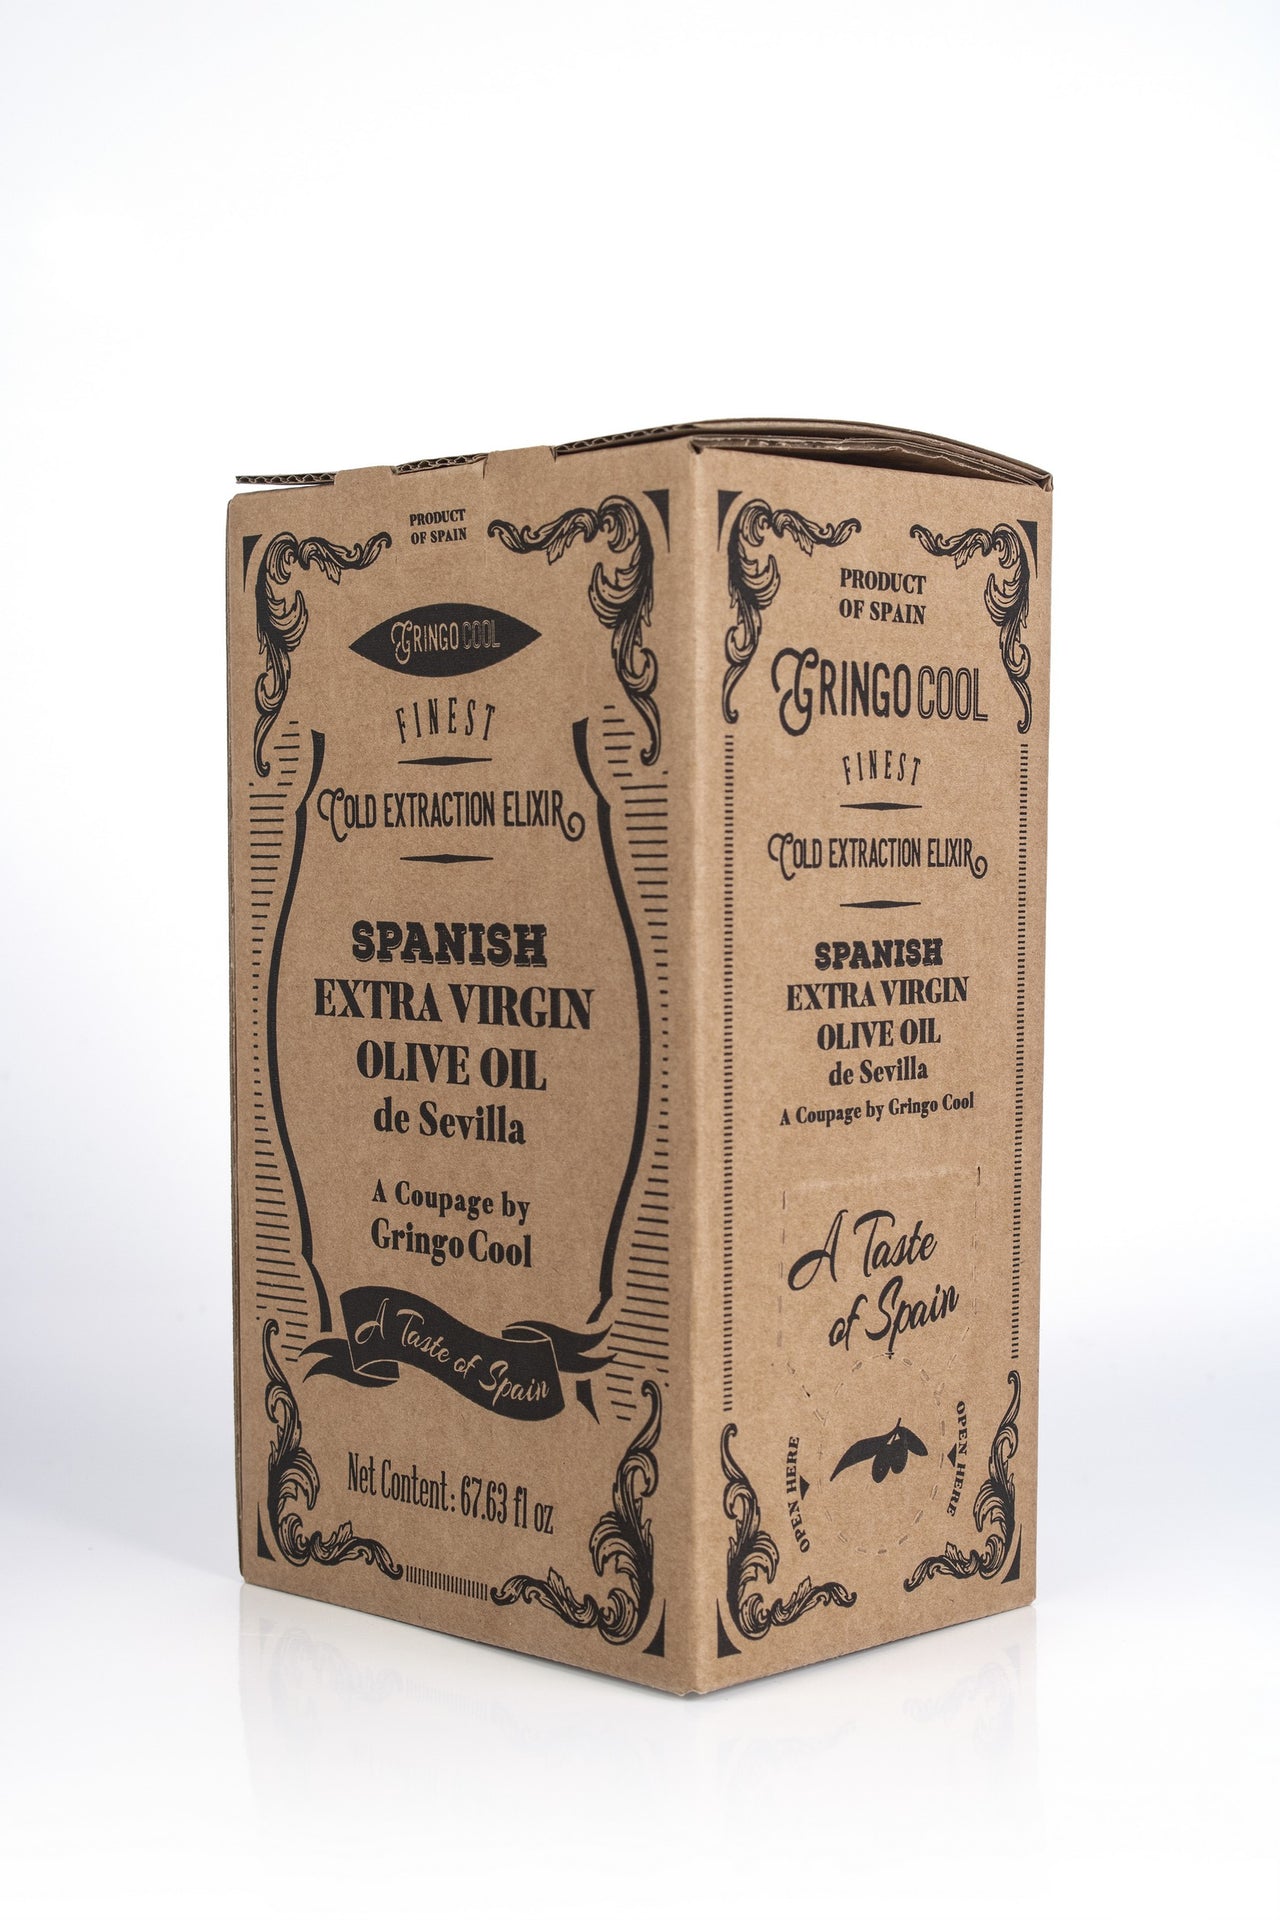 Spanish Extra Virgin Olive Oil - De Sevilla (2 liter box)